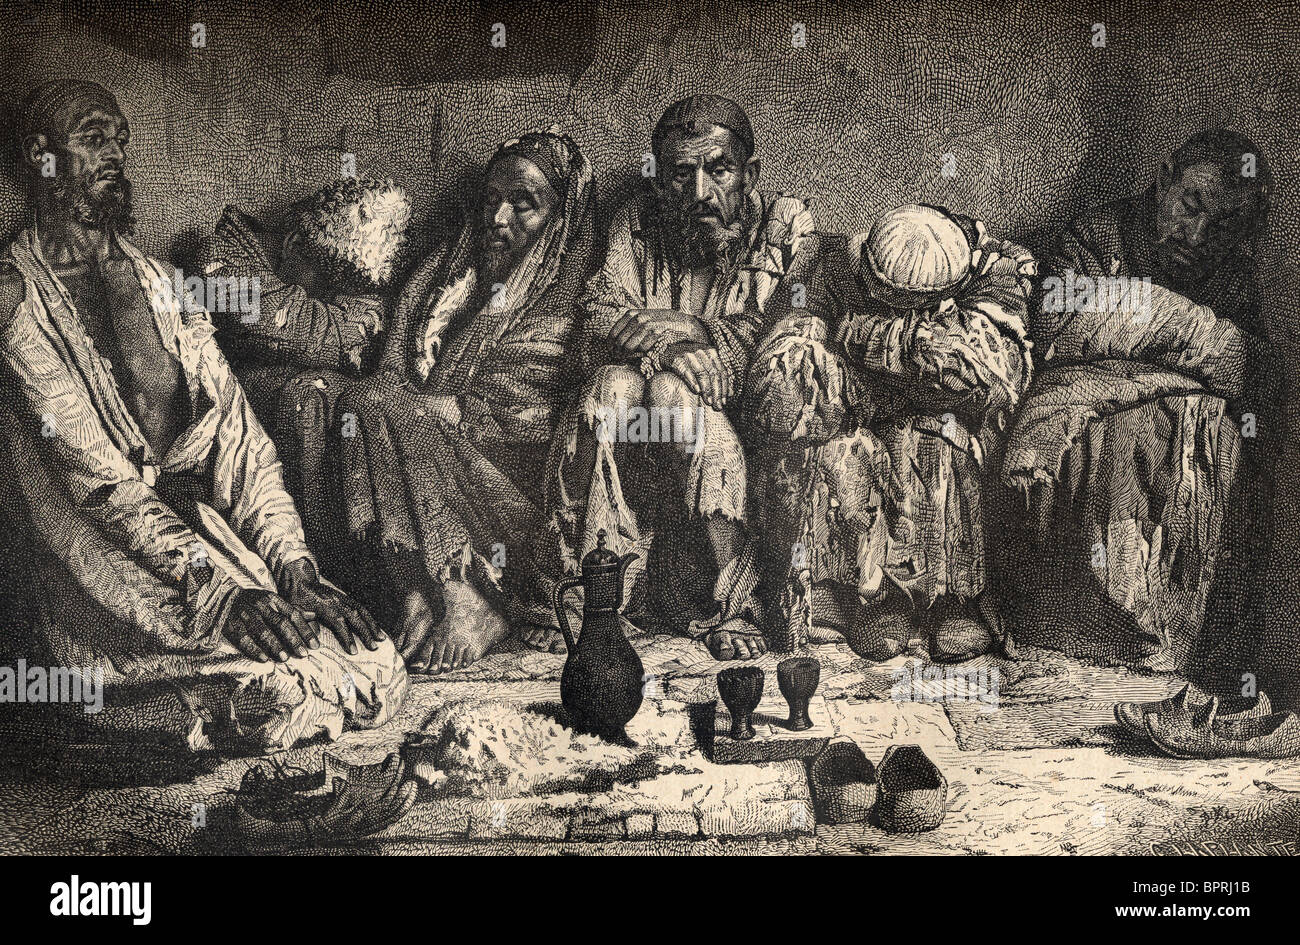 Un opium den in Asia centrale nel XIX secolo. Foto Stock